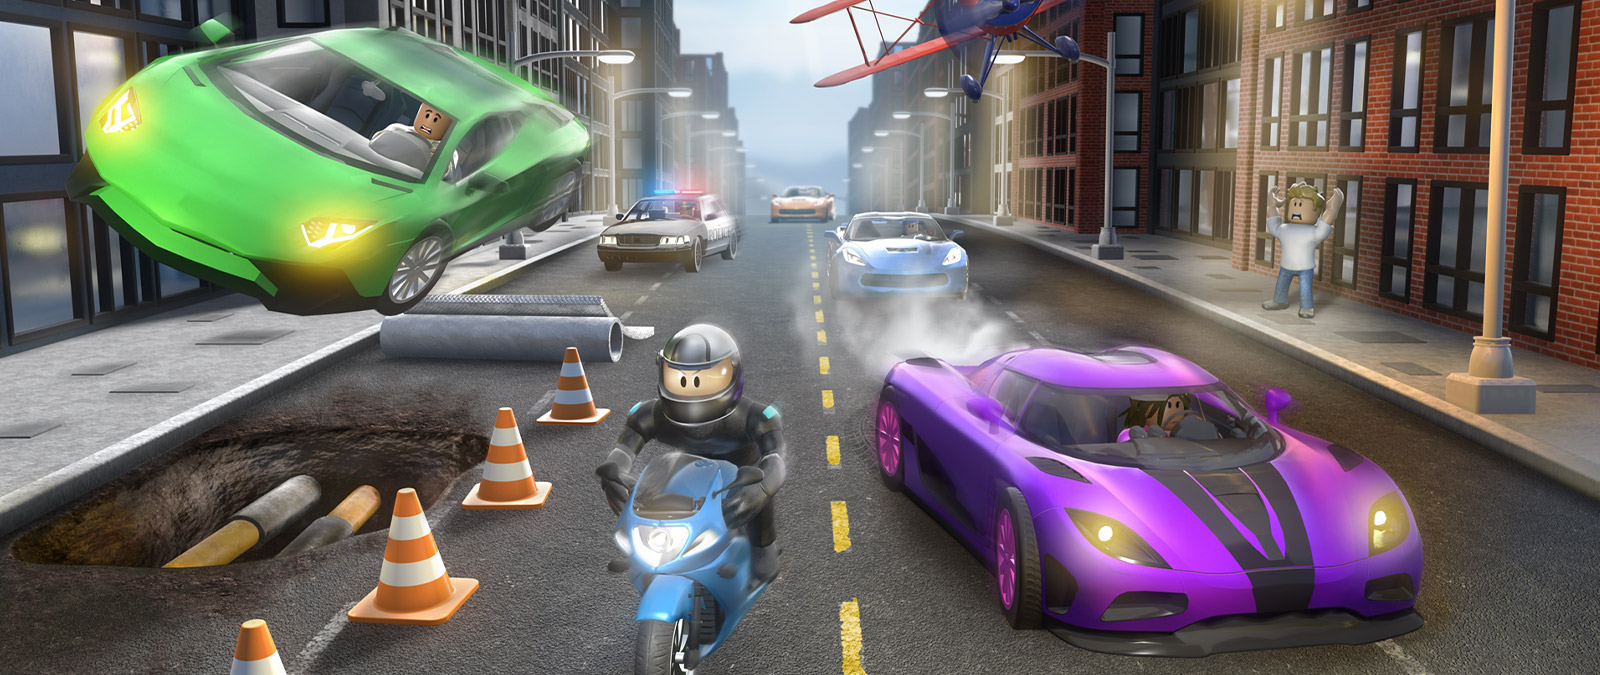 Personaje de Roblox Vehicle Simulator en una motocicleta, perseguido por otros vehículos en una calle de la ciudad